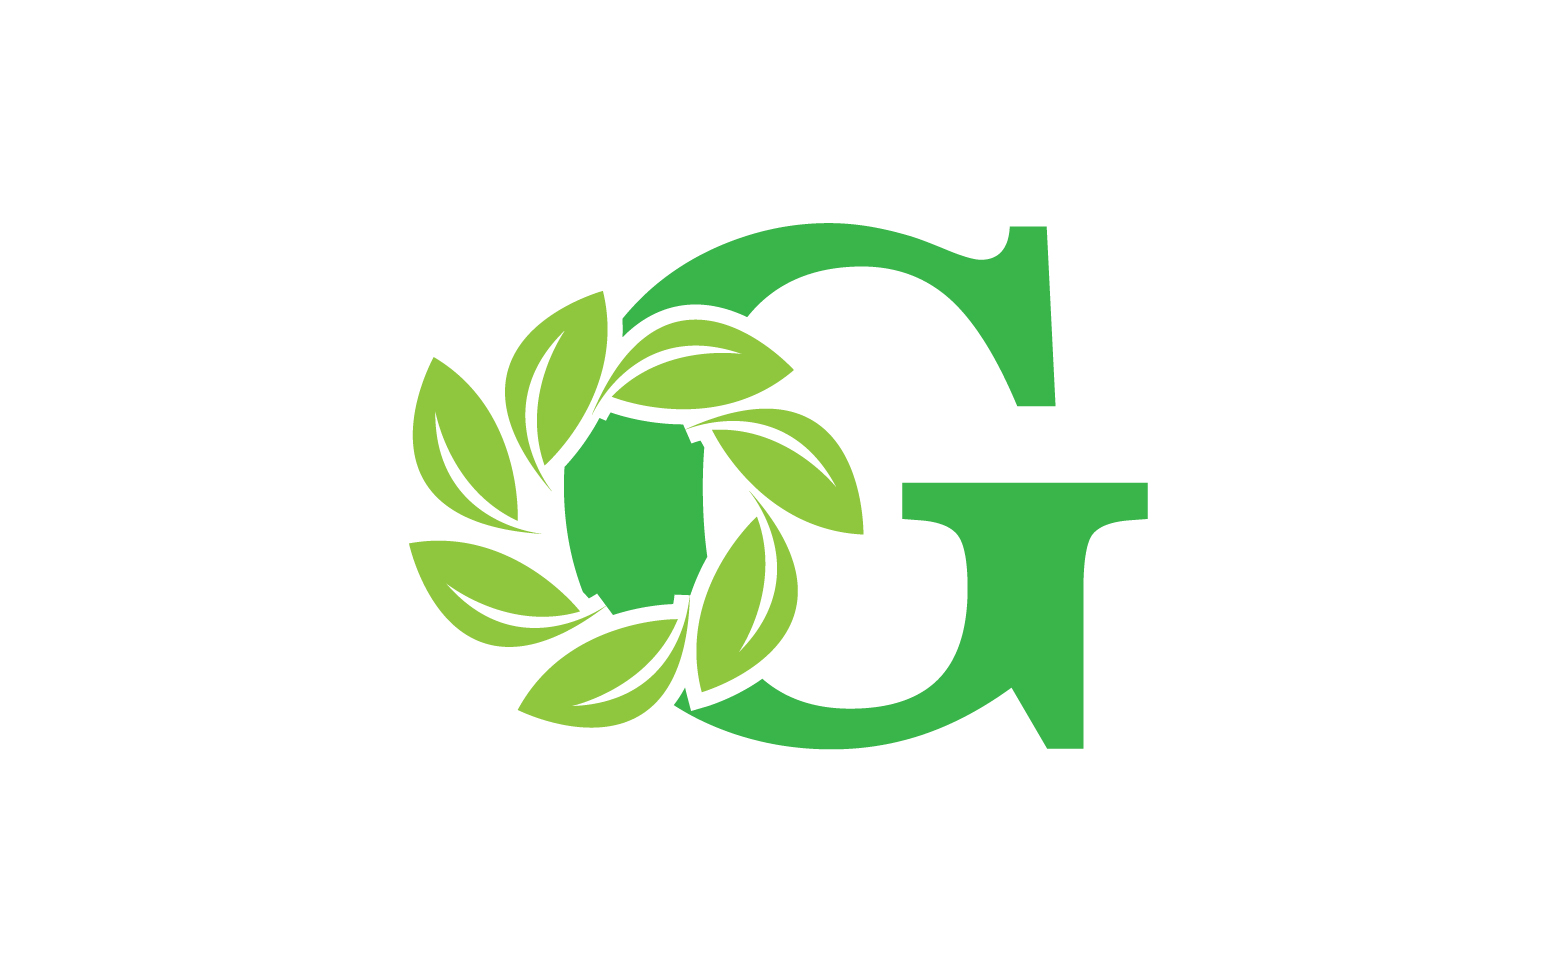 G letter leaf green logo icon version v2